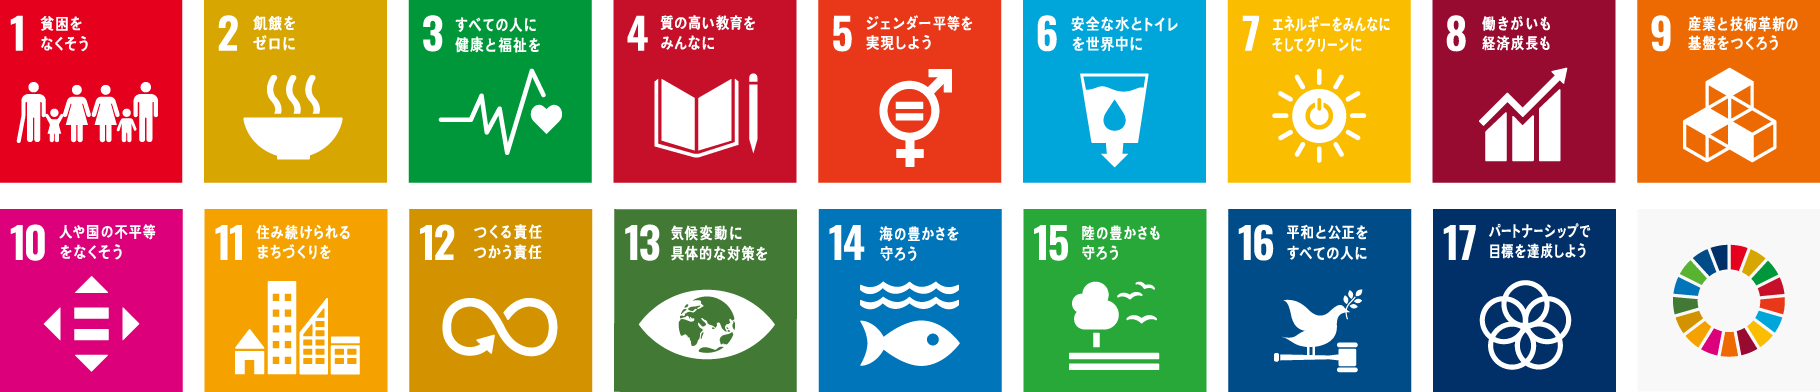 竜徳工業は持続可能な開発目標（SDGs）を支援しています